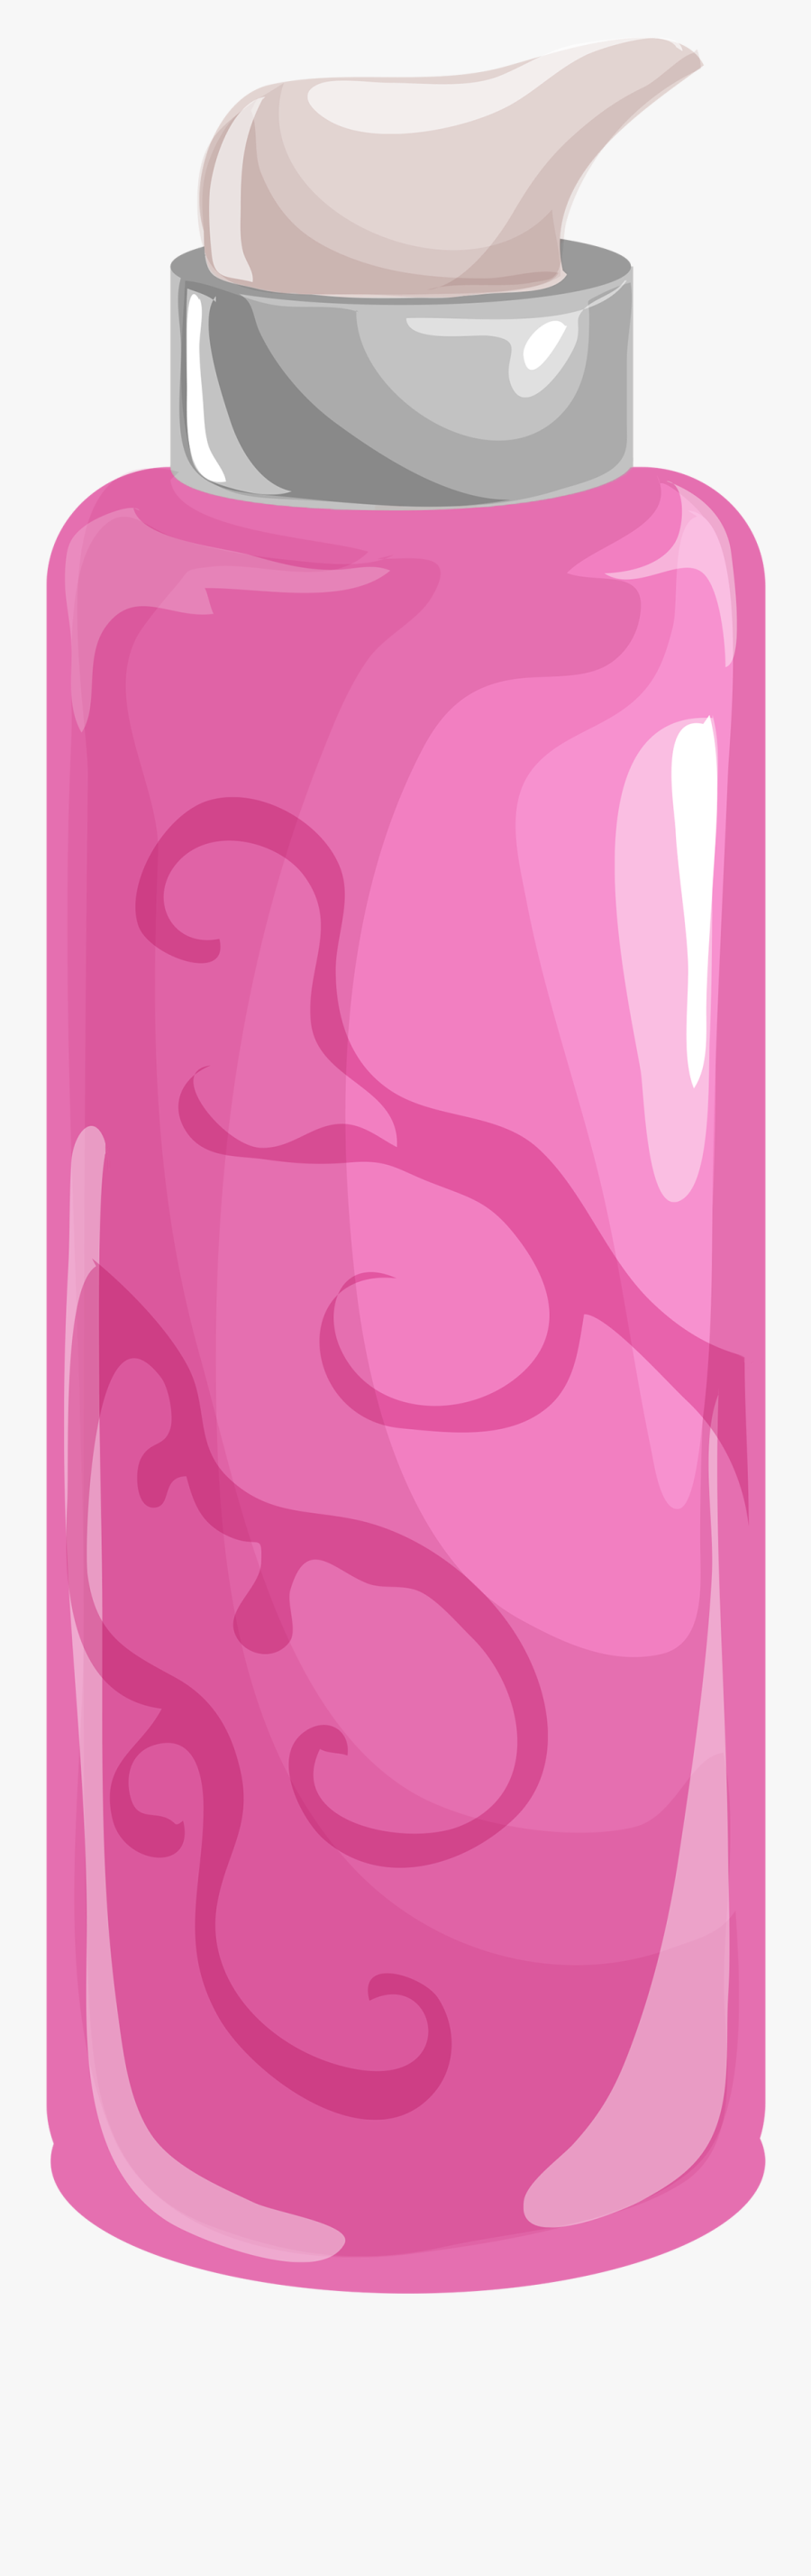 Clip Art Free - Lotion Bottle Clipart Png, Transparent Clipart